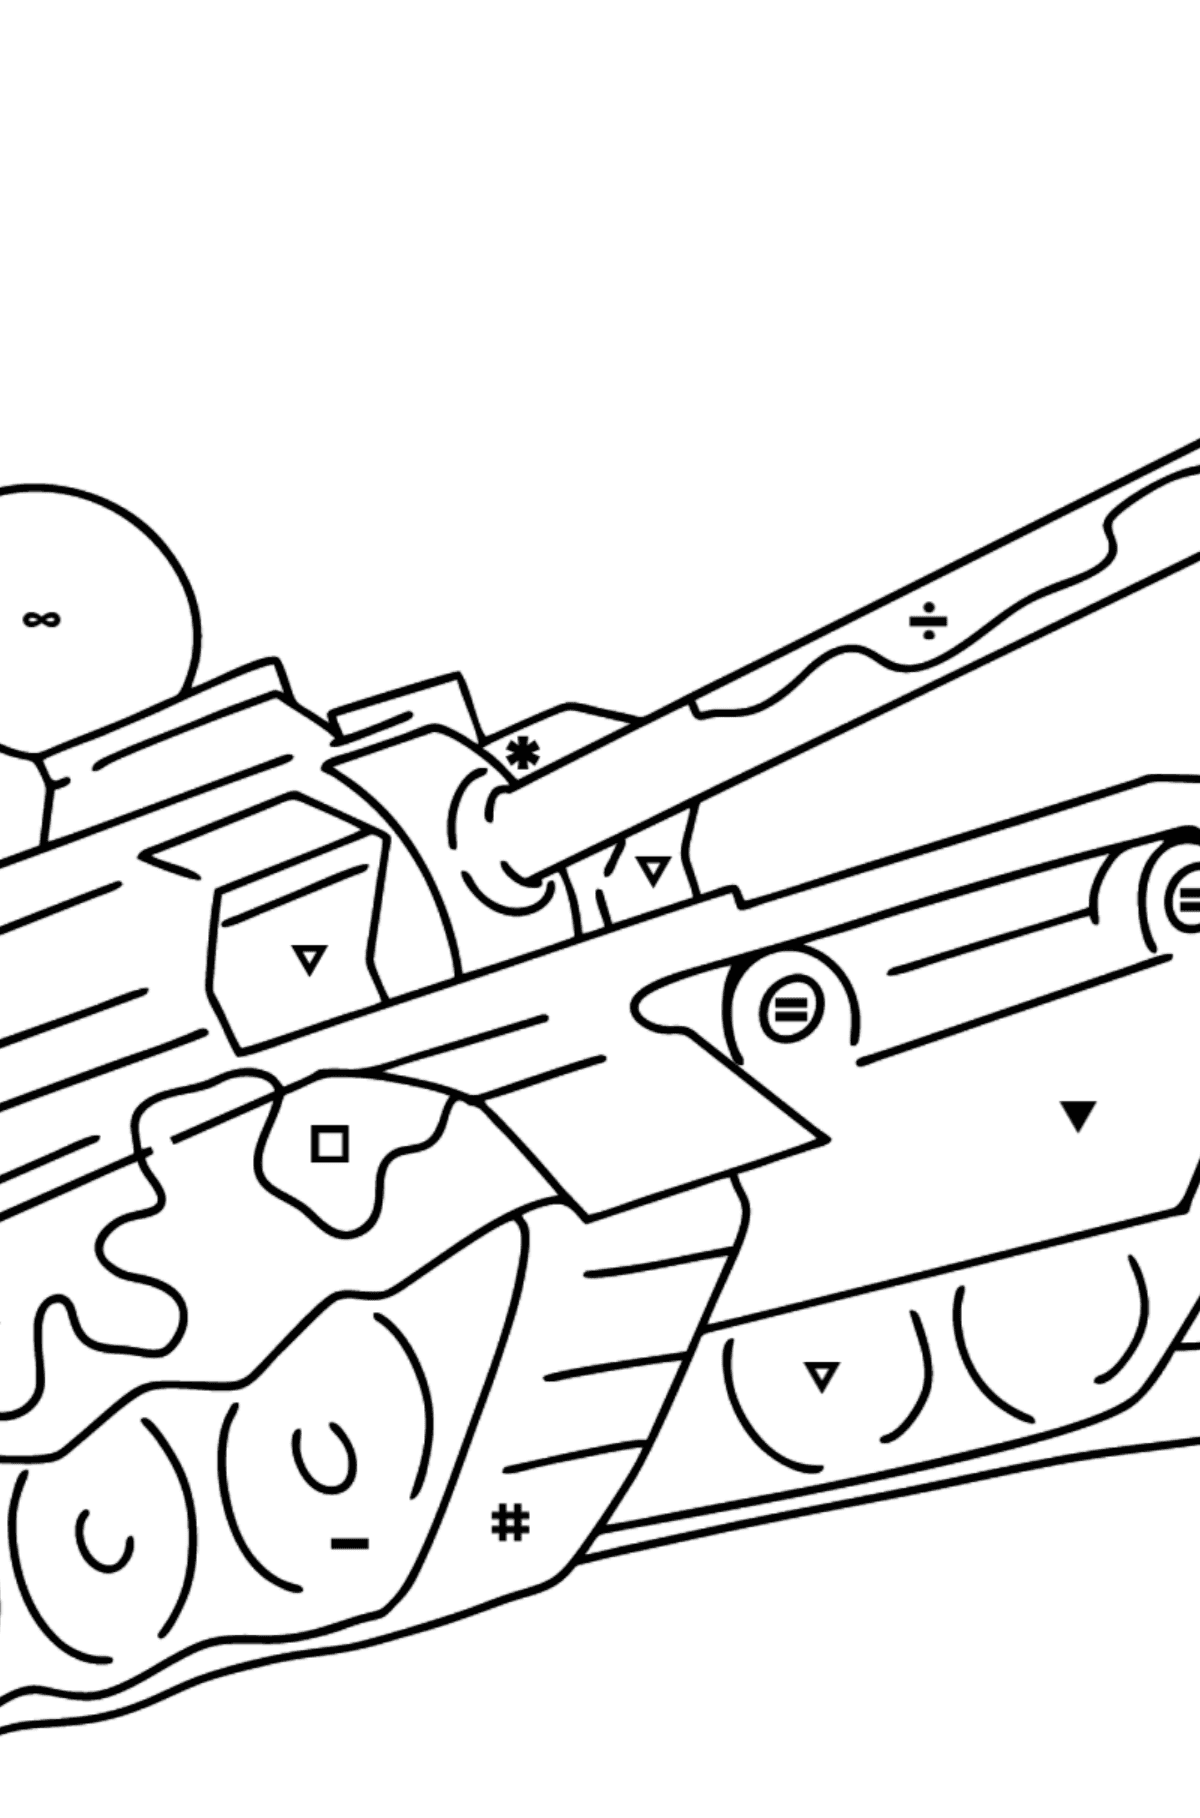 Desenho para colorir de tanques militares - Colorir por Símbolos para Crianças